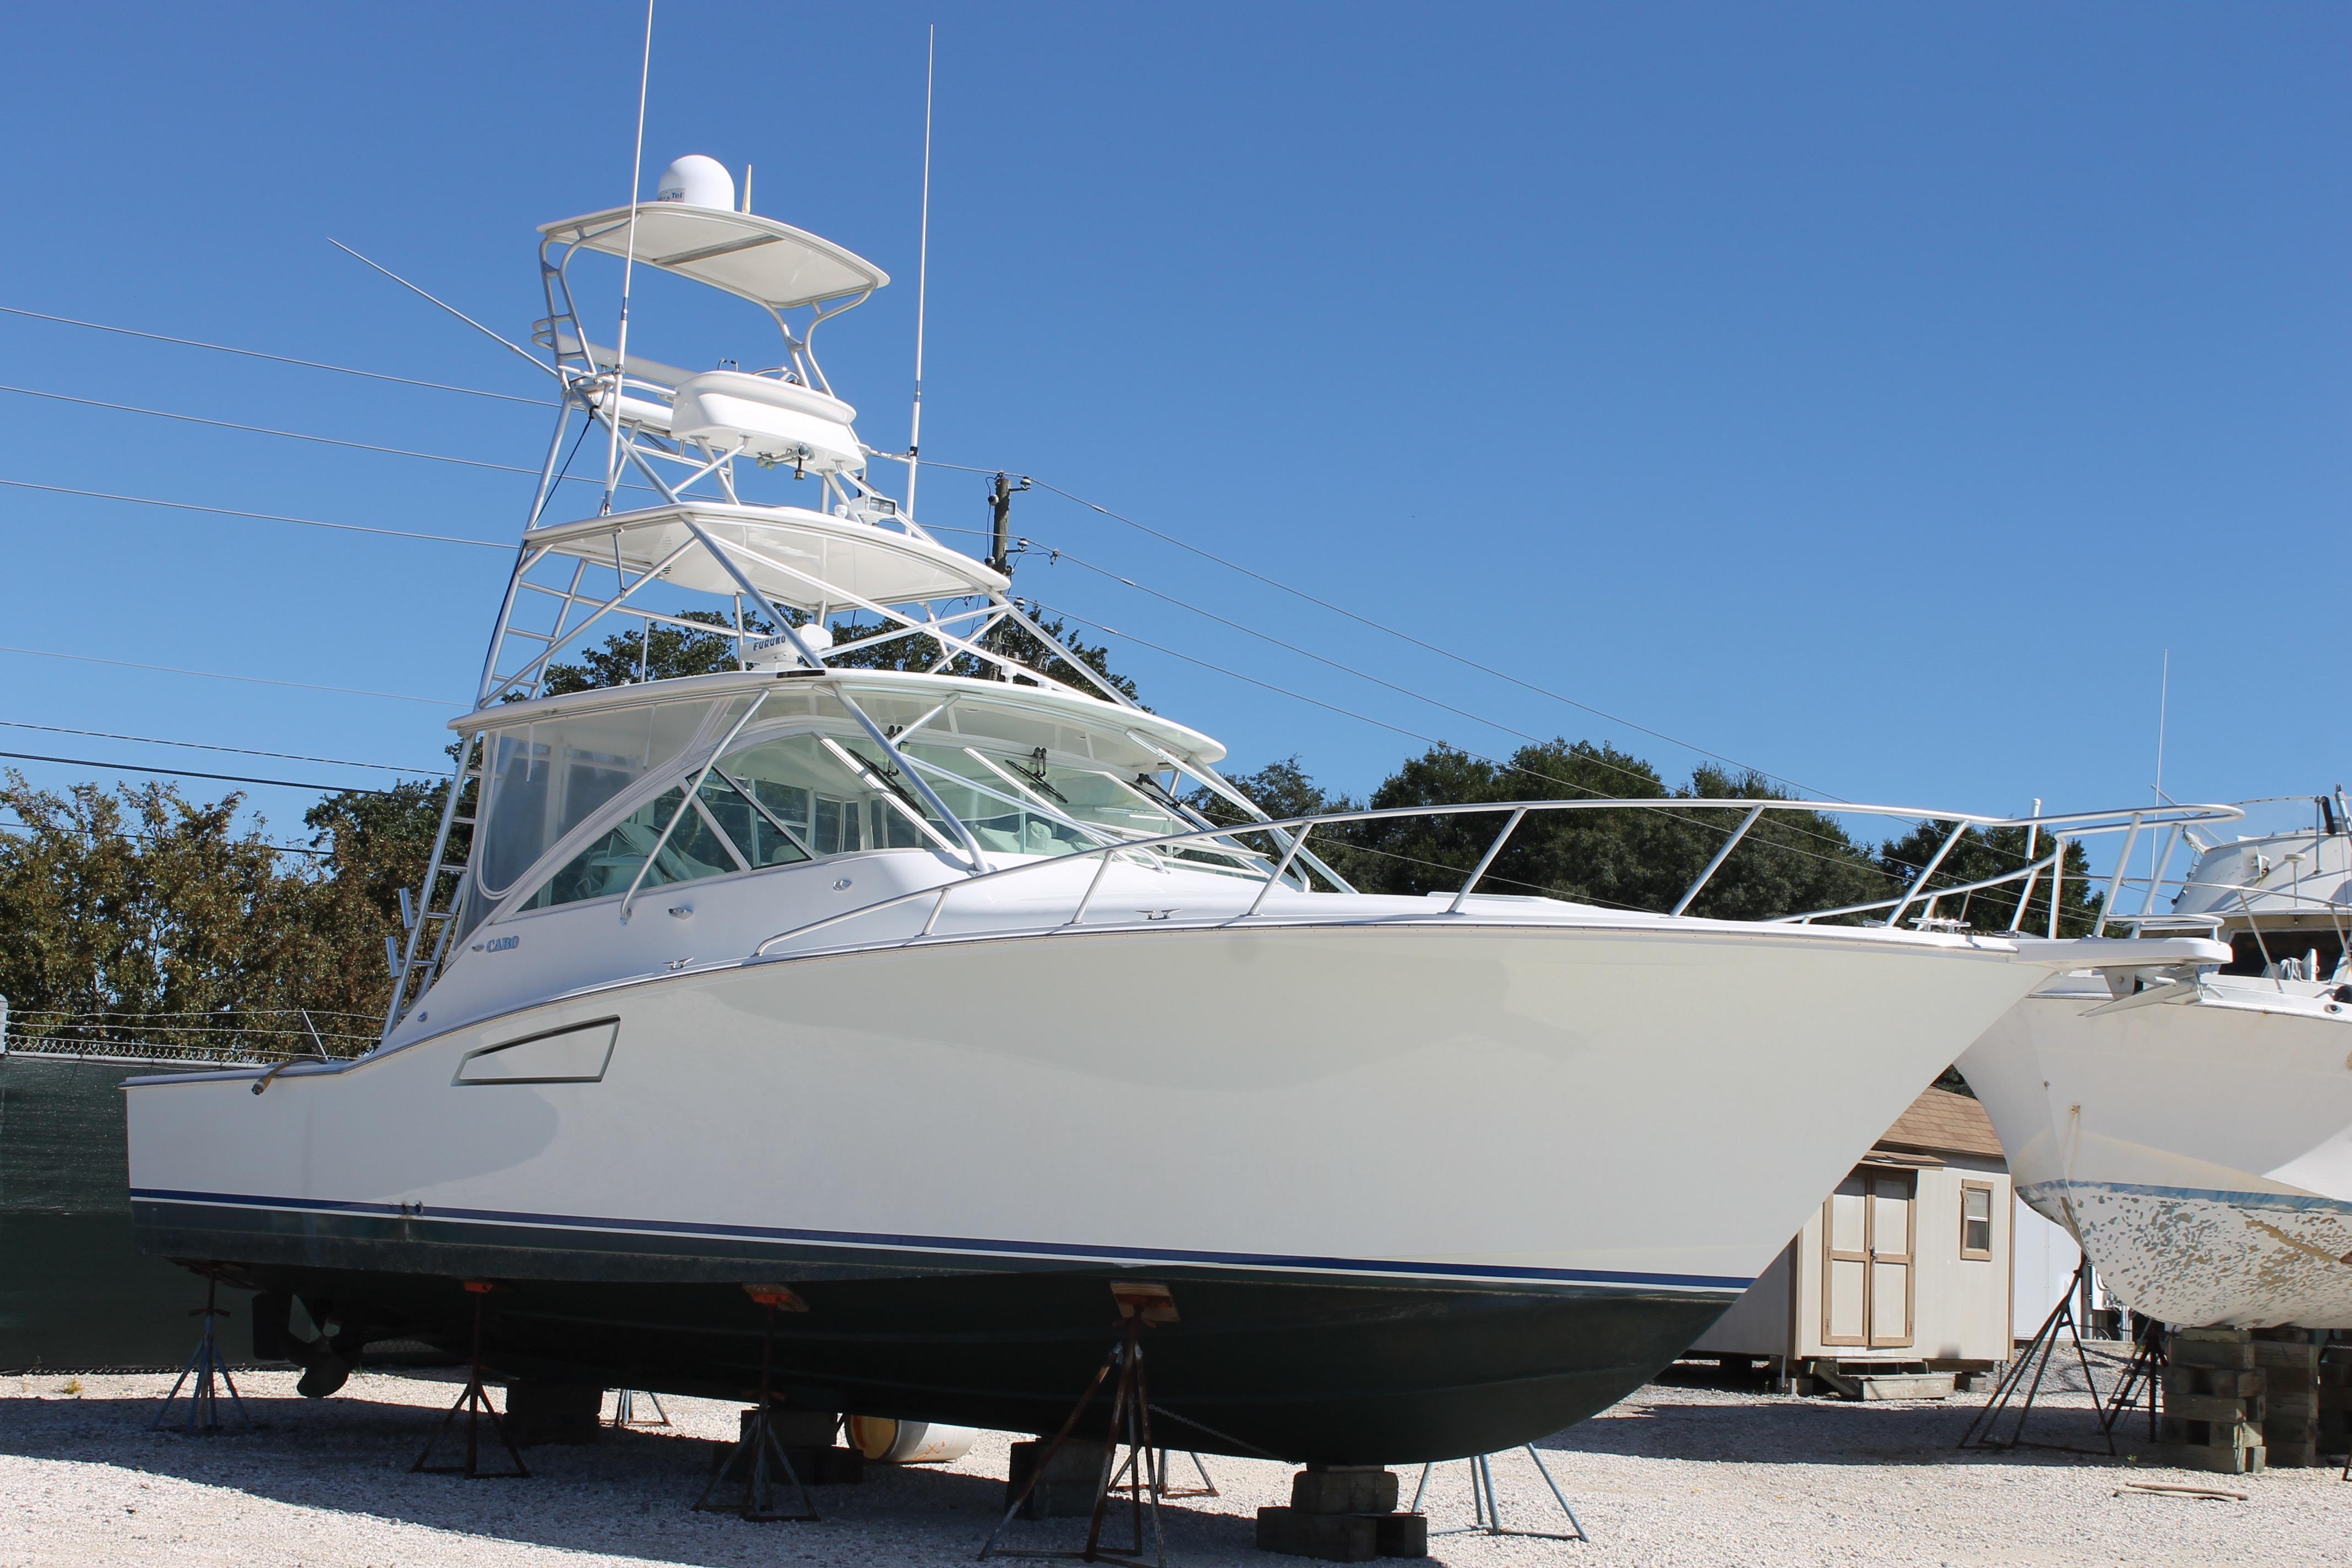 40 ft cabo sportfish yacht